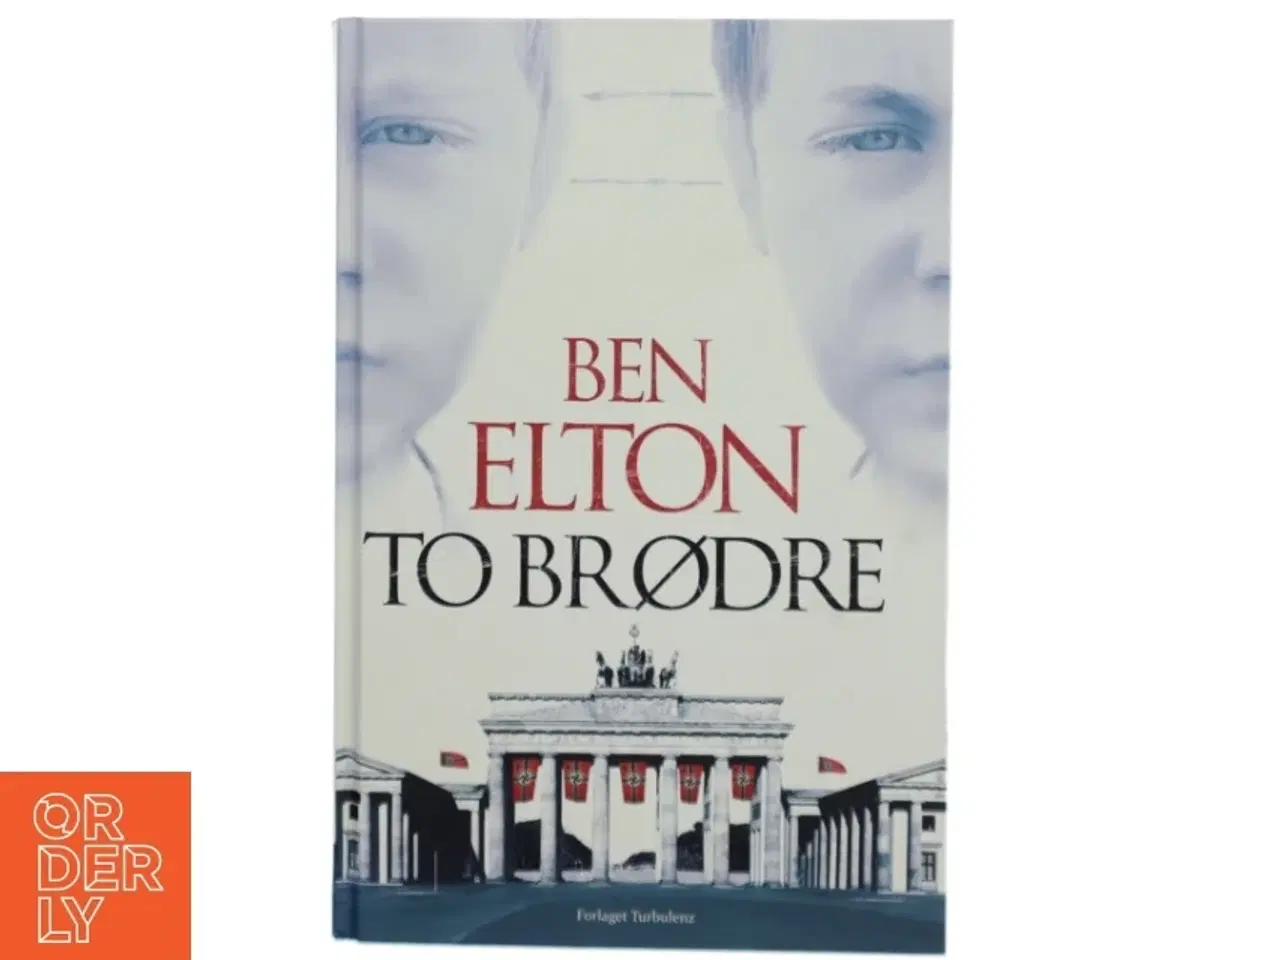 Billede 1 - To brødre af Ben Elton (Bog)